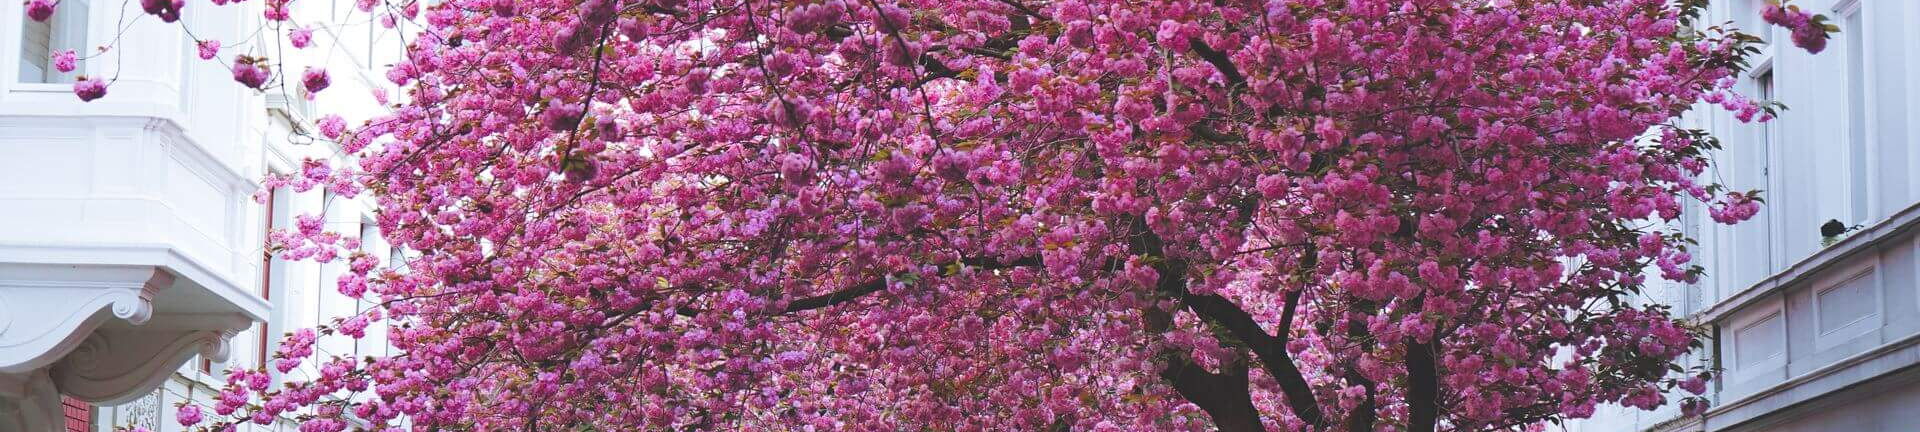 Kirschbäume blühen in den Straßen von Bonn